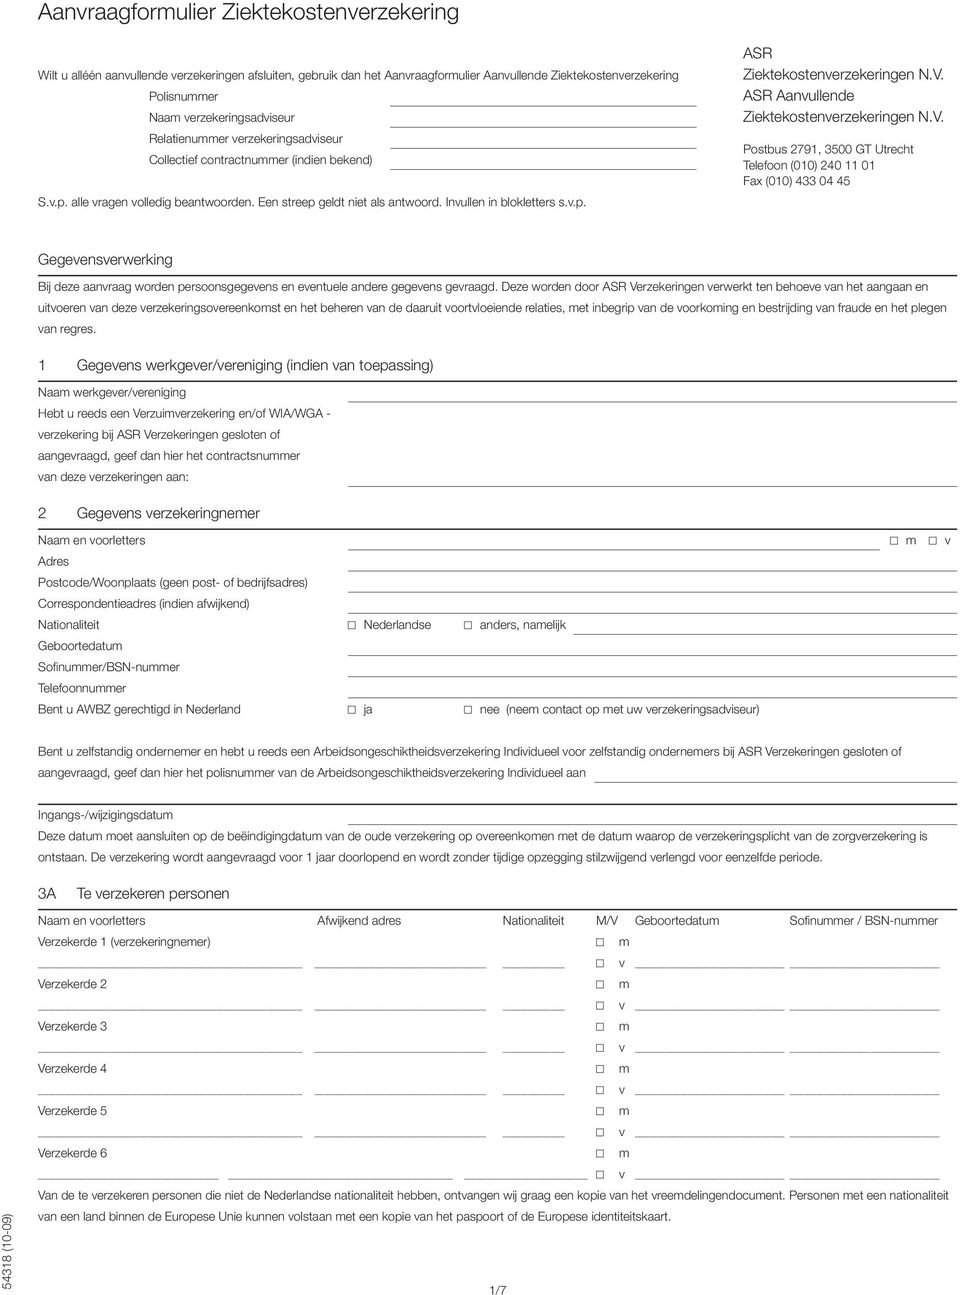 V. ASR Aanvullende Ziektekostenverzekeringen N.V. Postbus 2791, 3500 GT Utrecht Telefoon (010) 240 11 01 Fax (010) 433 04 45 Gegevensverwerking Bij deze aanvraag worden persoonsgegevens en eventuele andere gegevens gevraagd.